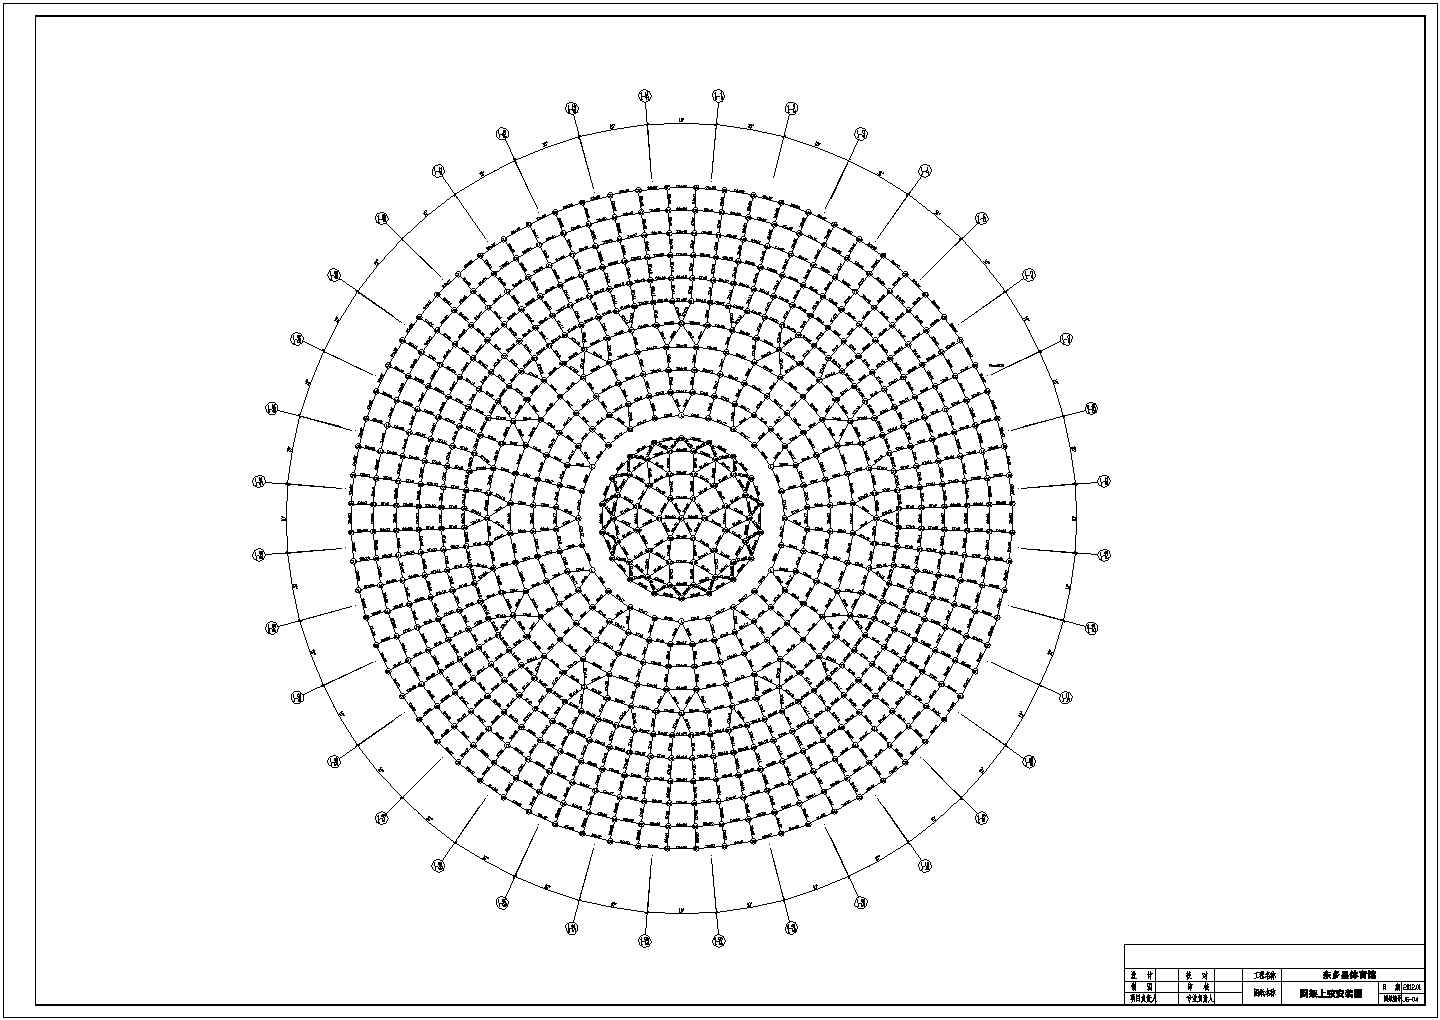 焊接球和螺栓球混用84米圆形网架结构施工图